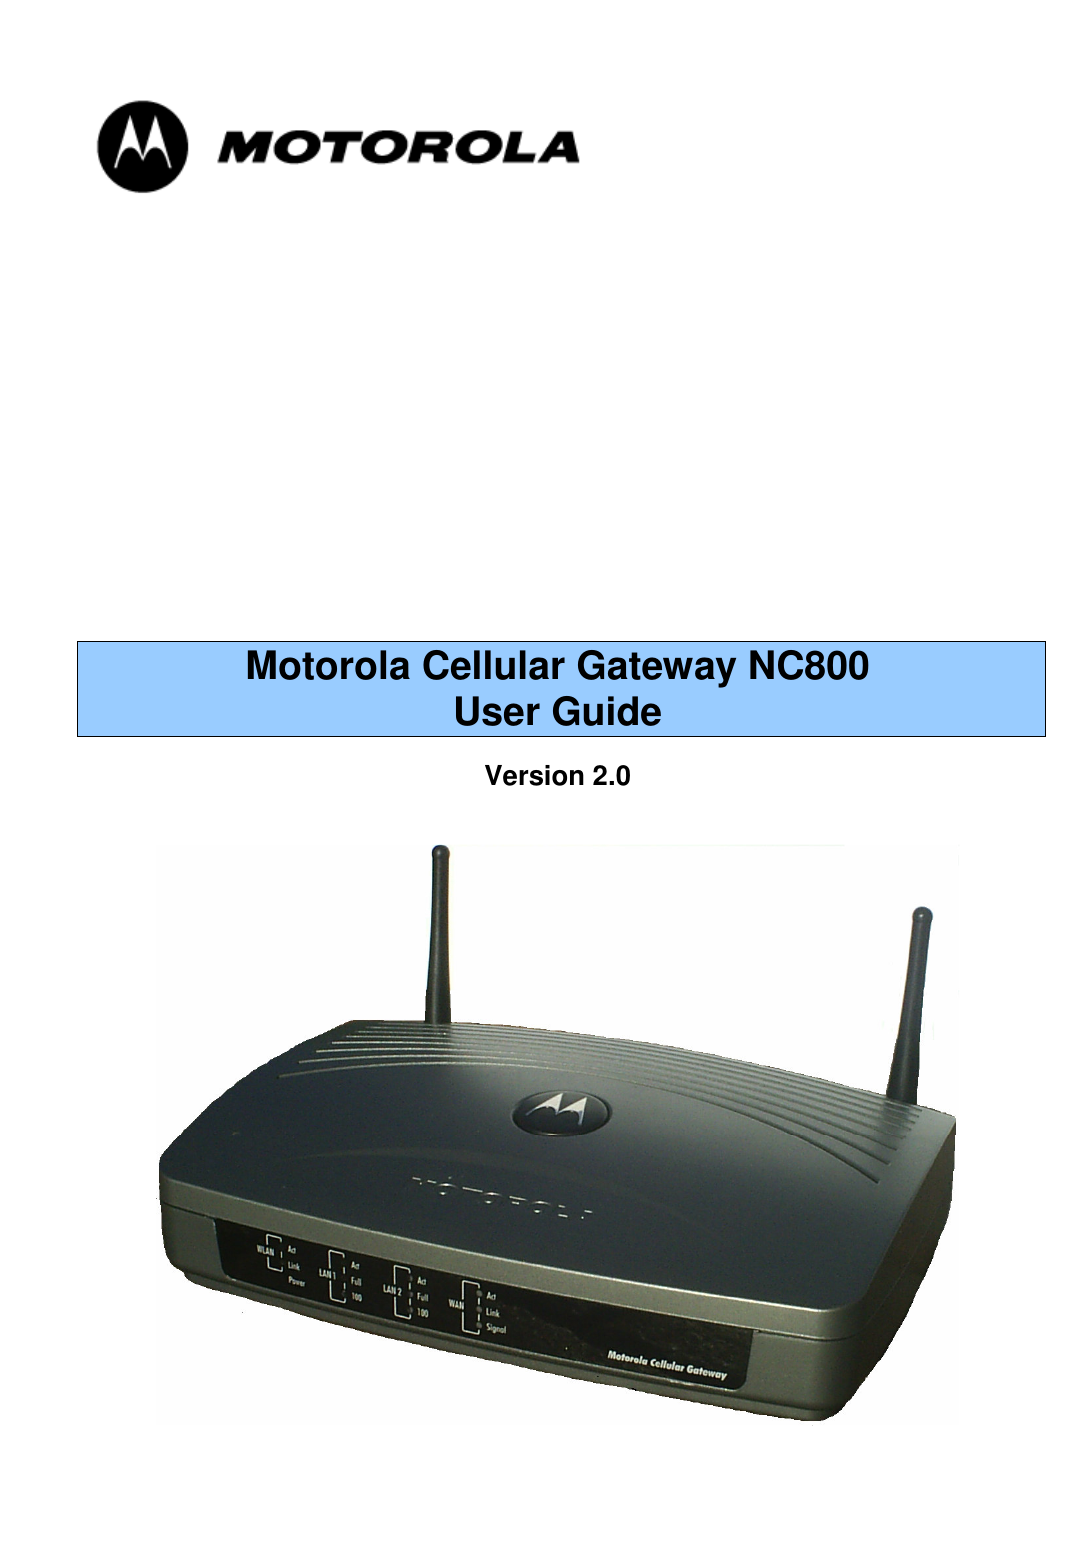         Motorola Cellular Gateway NC800 User Guide  Version 2.0    